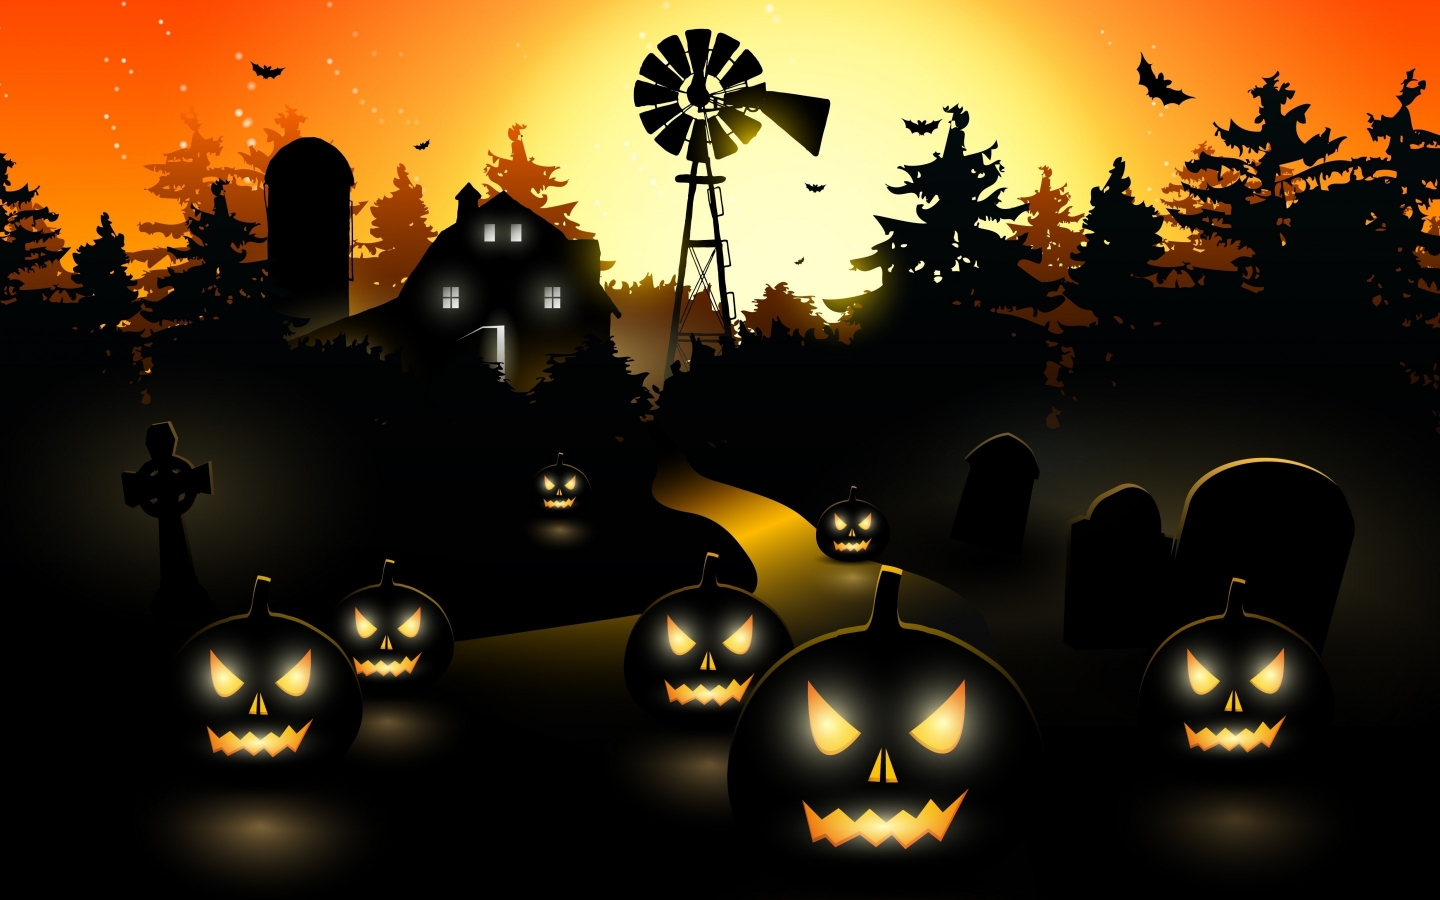 Halloween Black Pumpkins for 1440 x 900 widescreen resolution